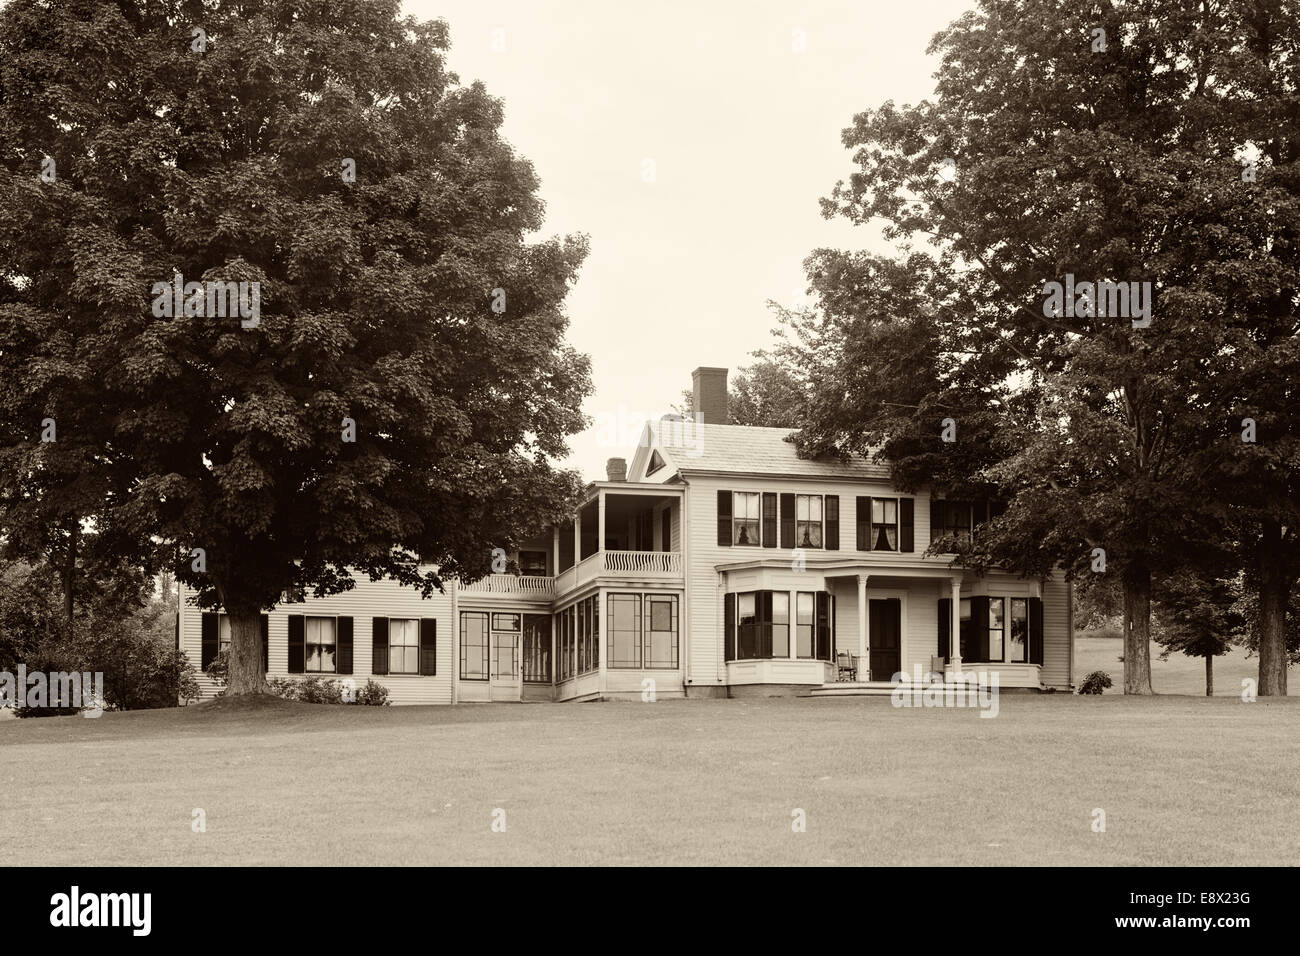 Geburtsort und Wohnort der 1800er Jahren amerikanischer Evangelist, Dwight Lyman (DL) Moody, befindet sich in East Northfield MA.  Foto c1904. Stockfoto